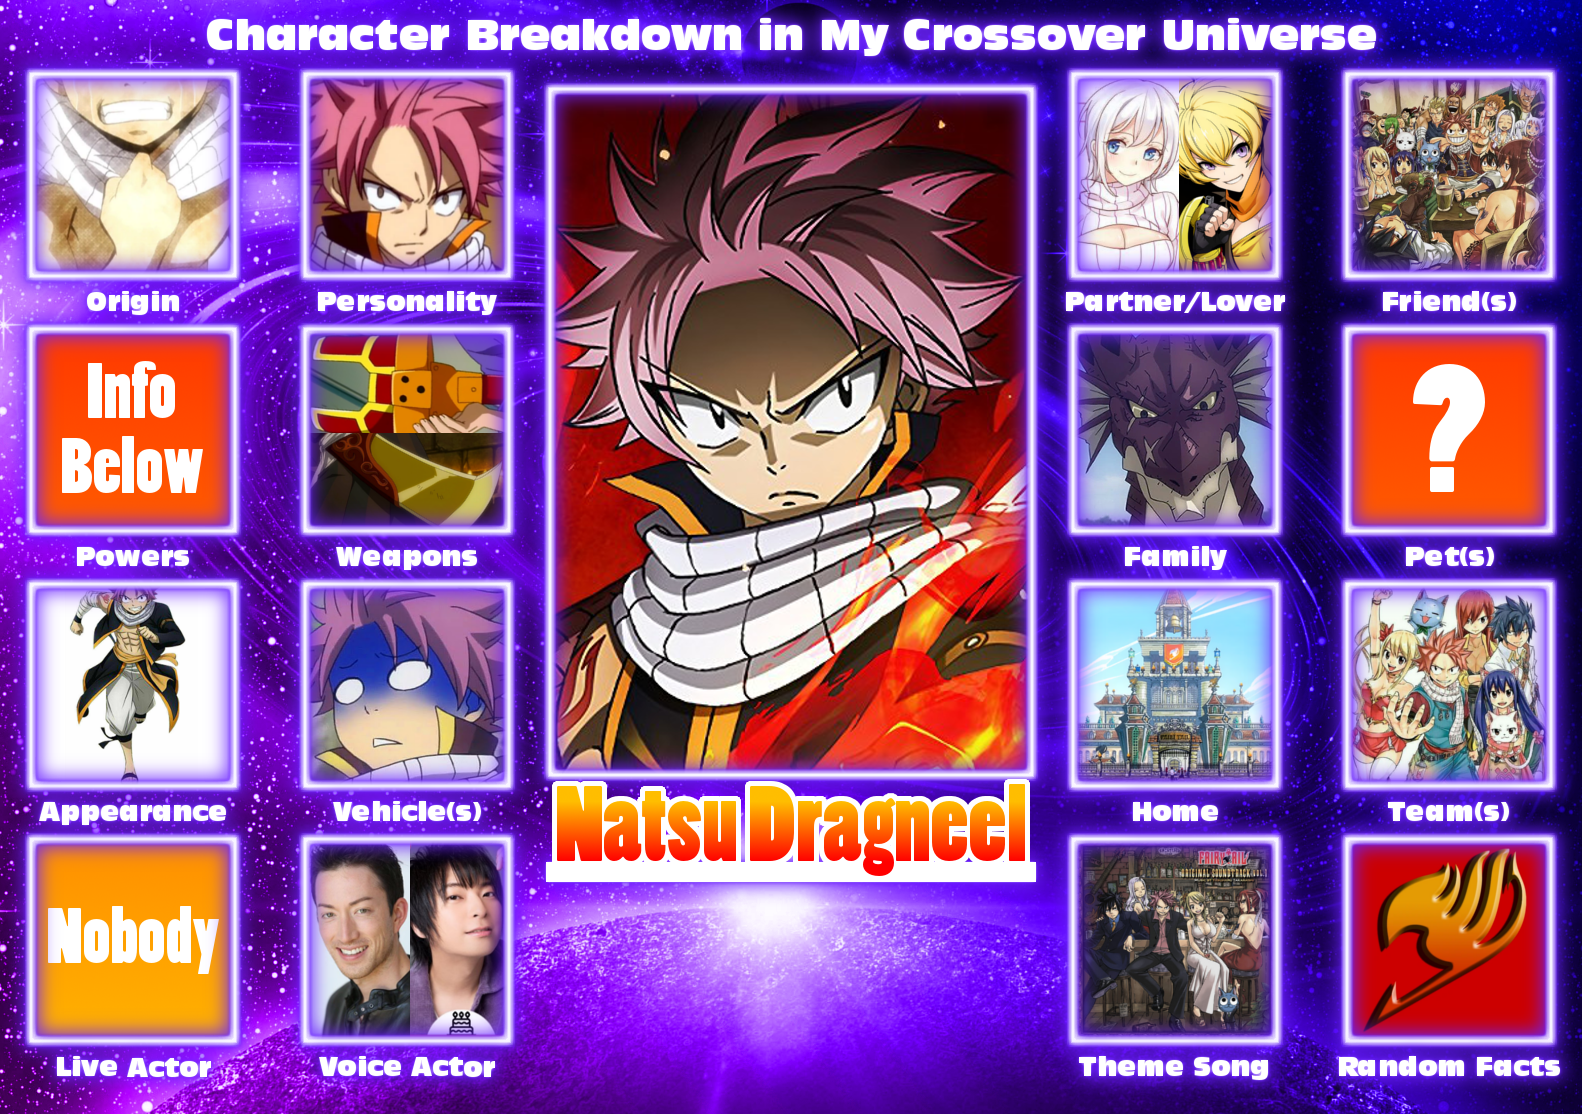 Character information - Dragneel Natsu